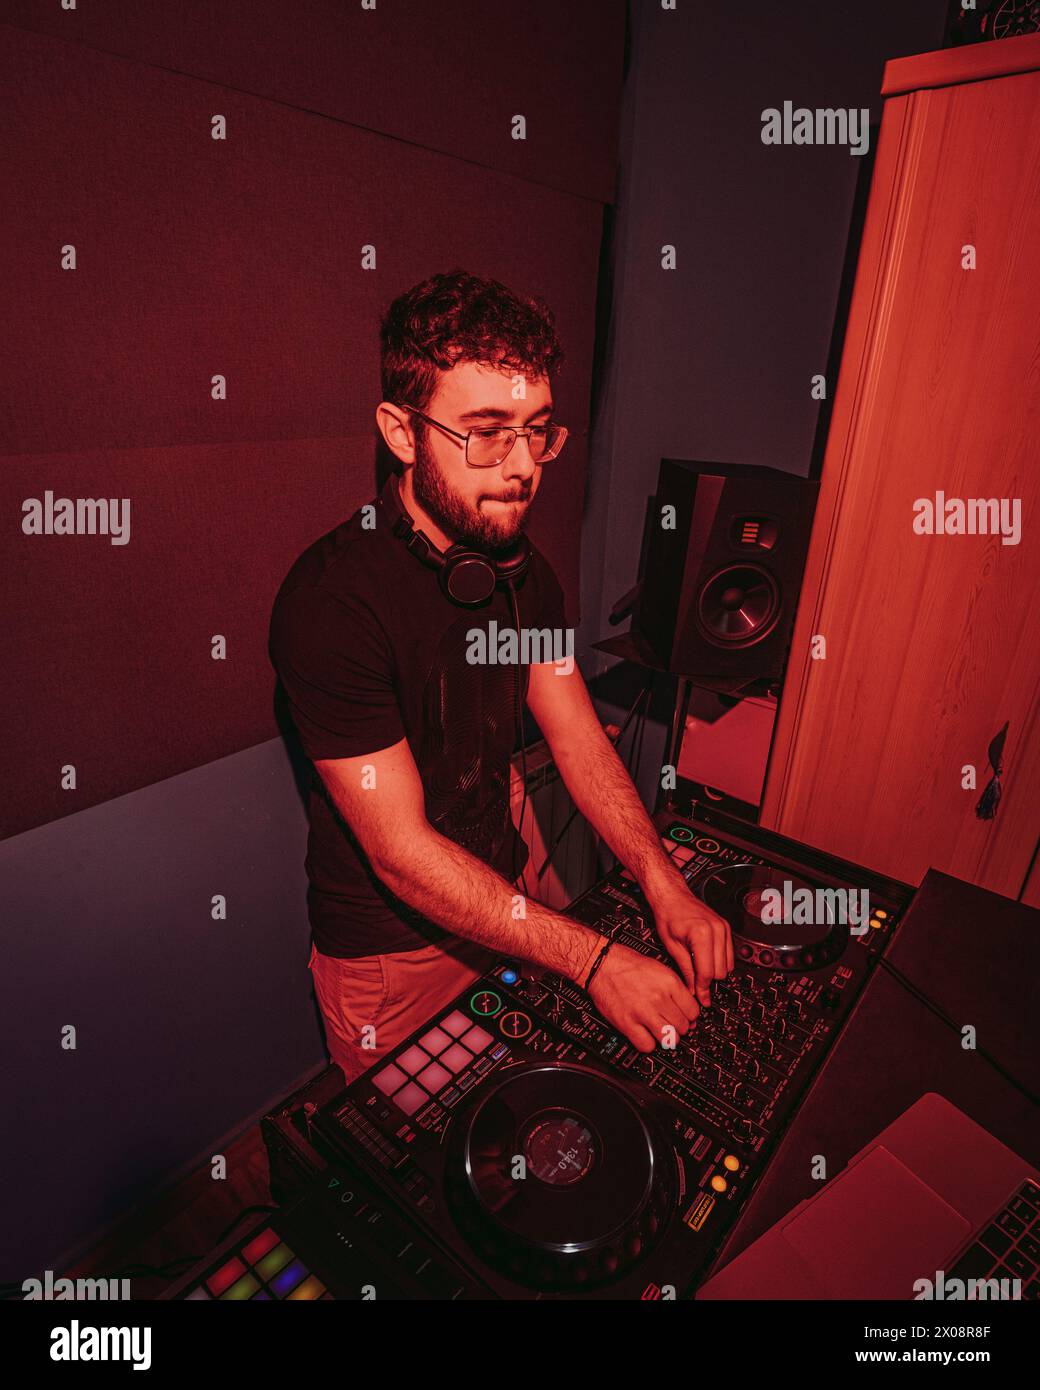 Ein fokussierter DJ, der Kopfhörer trägt, mischt Songs auf einem professionellen DJ-Controller, beleuchtet durch rote Umgebungsbeleuchtung in einem Club-ähnlichen Studio-Setting Stockfoto